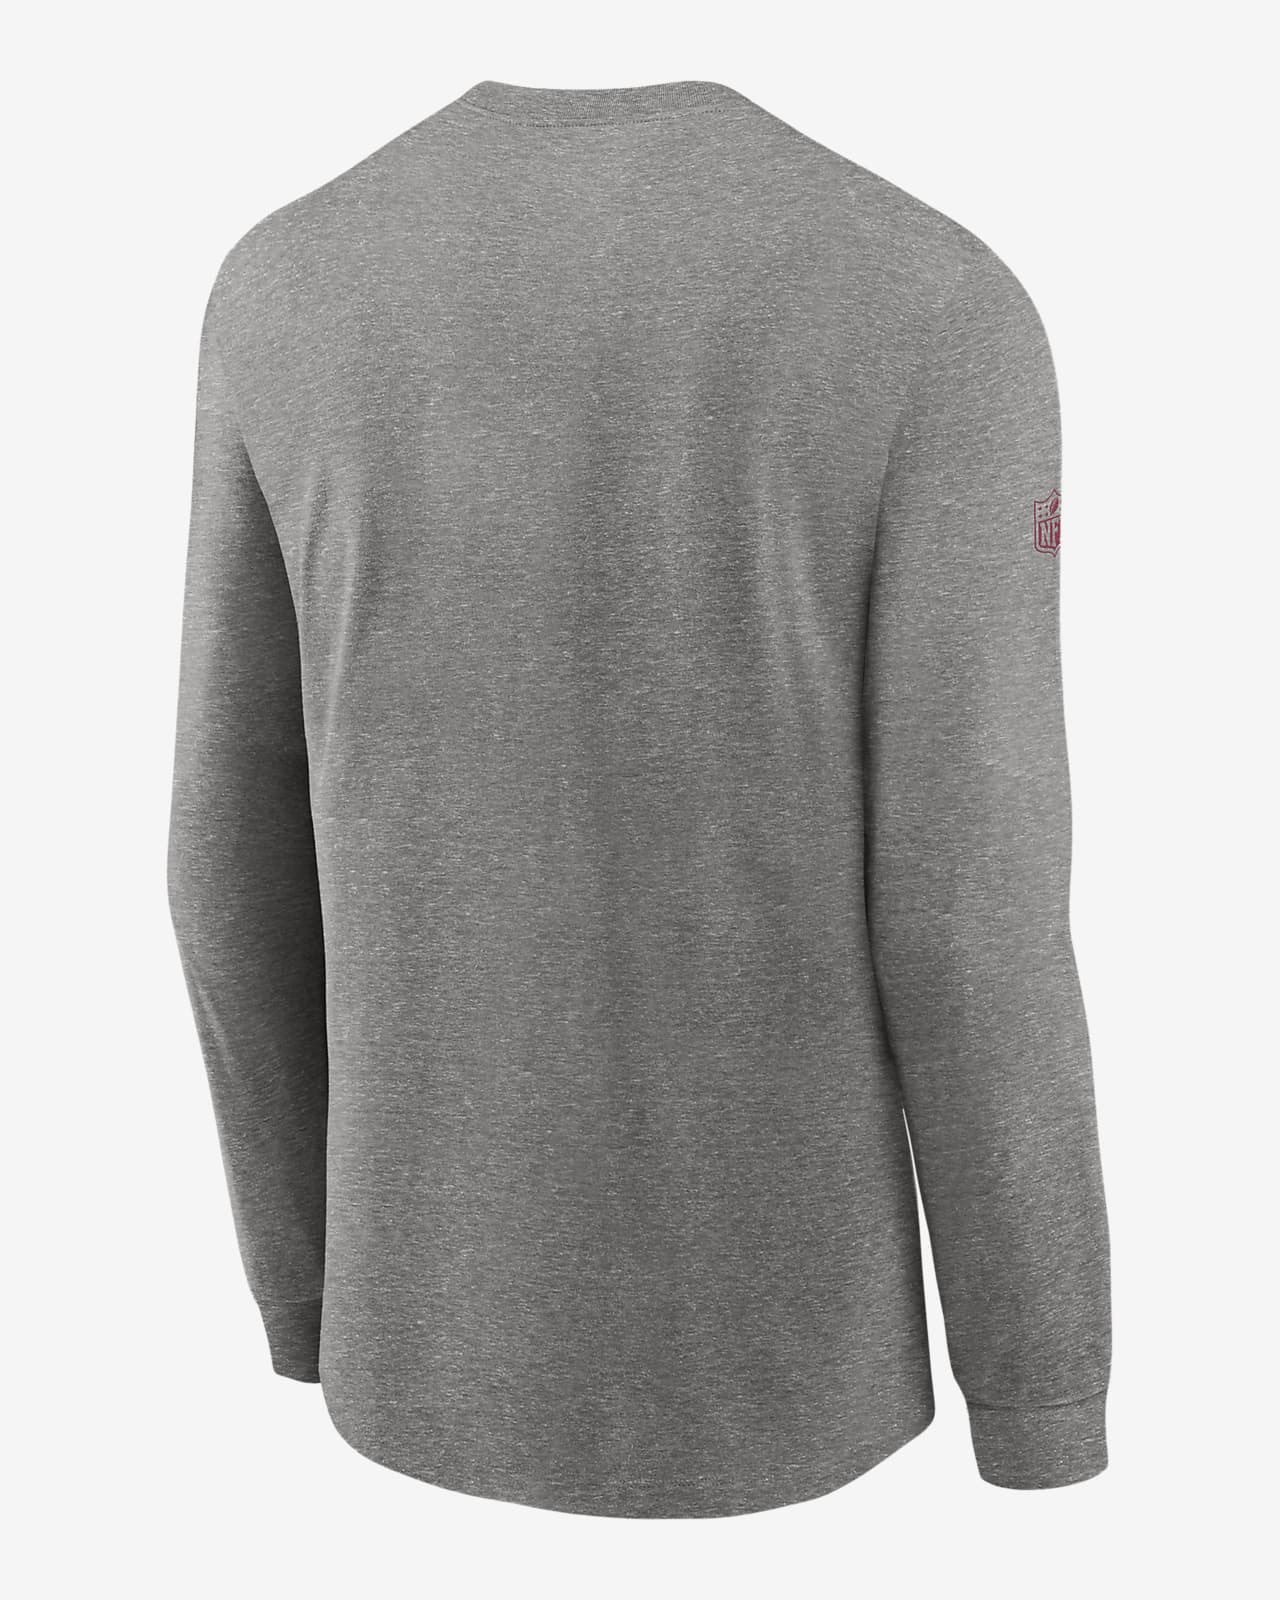 Nike Men's Arizona Cardinals Sideline Team Issue Long Sleeve T-Shirt - Grey - XL (extra Large)